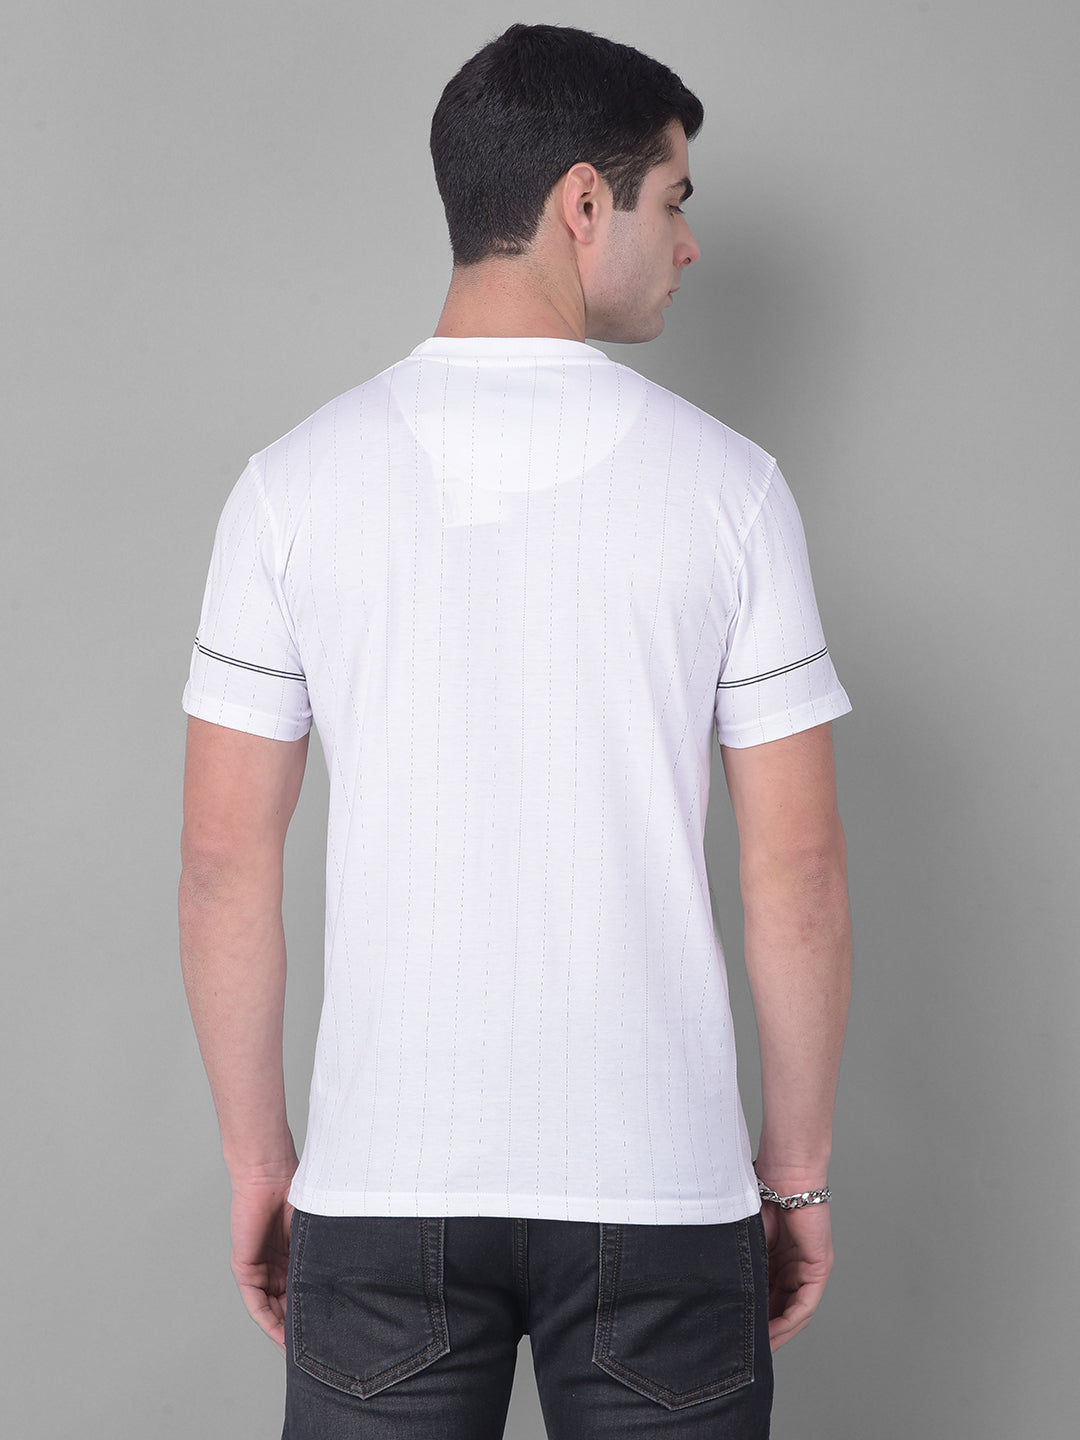 cobb broadway white printed round neck t-shirt